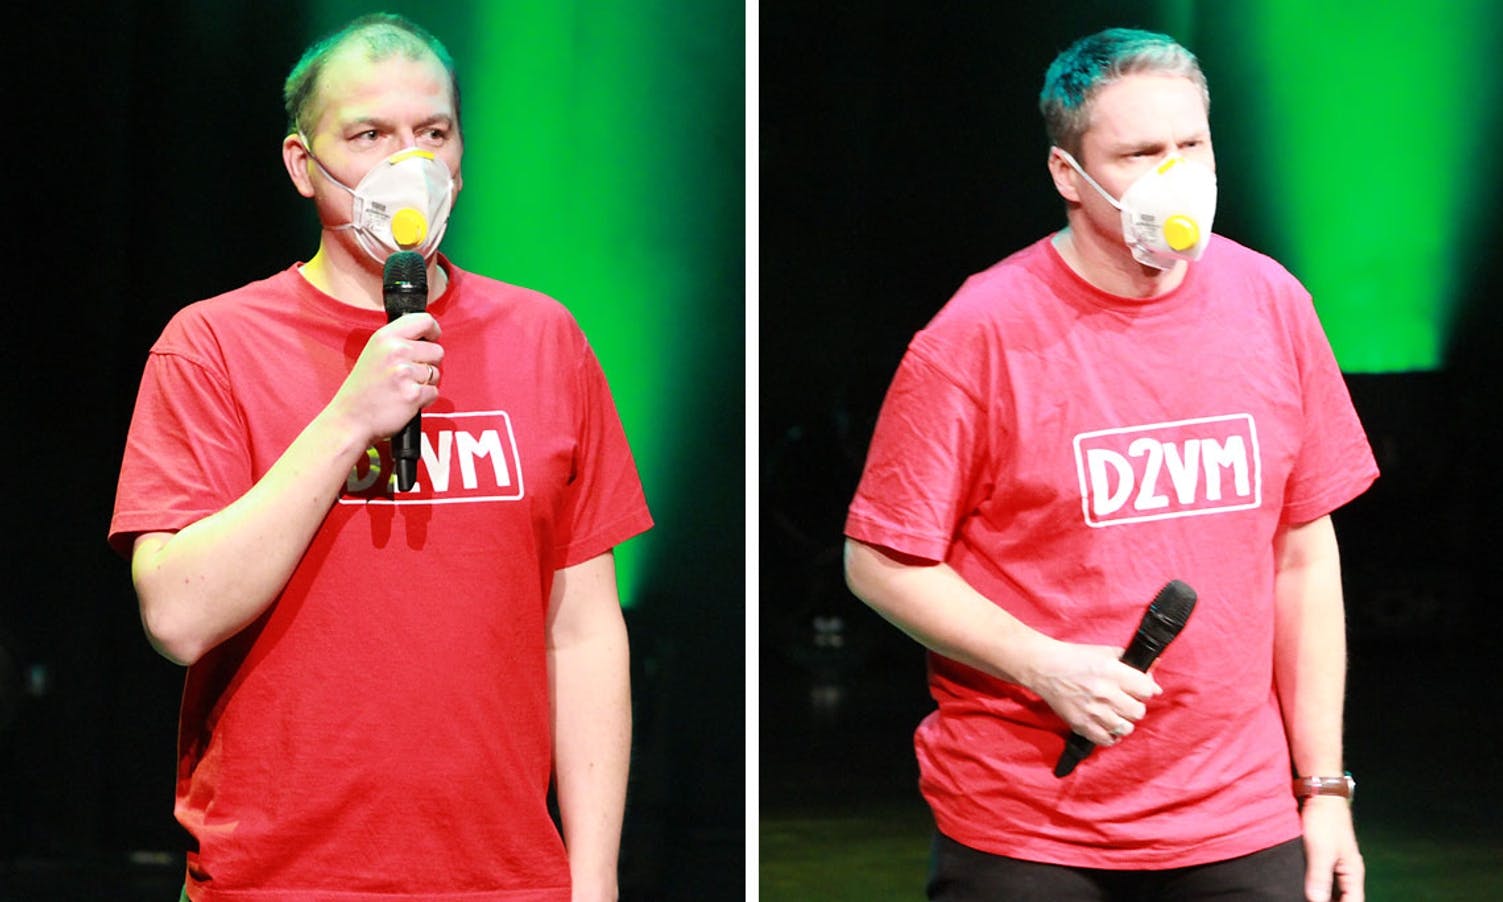 Latteren sat laust då Thomas og Jan Helge 6. mars i fjor kom på scenen med ansiktsmaske. (Foto: KVB)